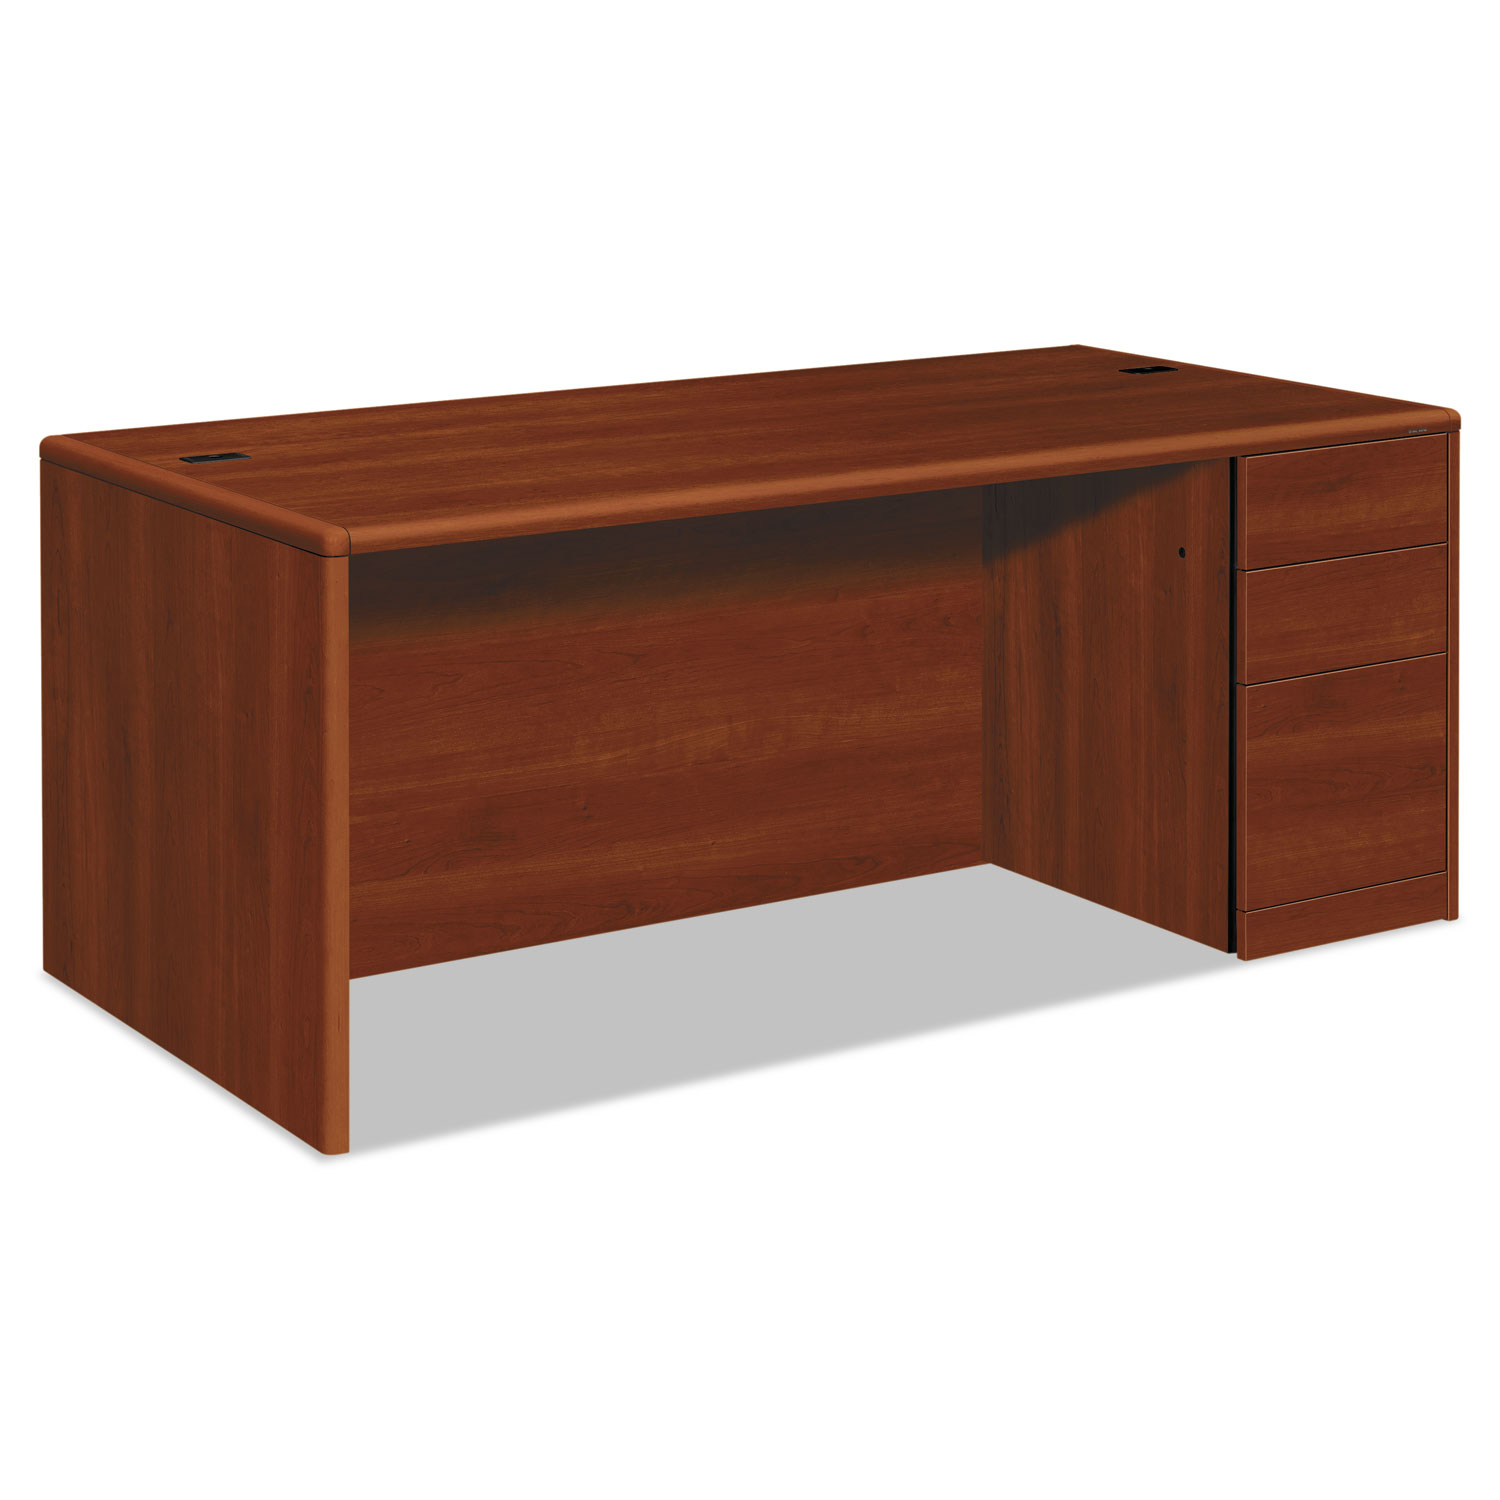  HON H10787R.COGNCOGN 10700 Single Pedestal Desk, Full Right Pedestal, 72w x 36d x 29.5h, Cognac (HON10787RCO) 